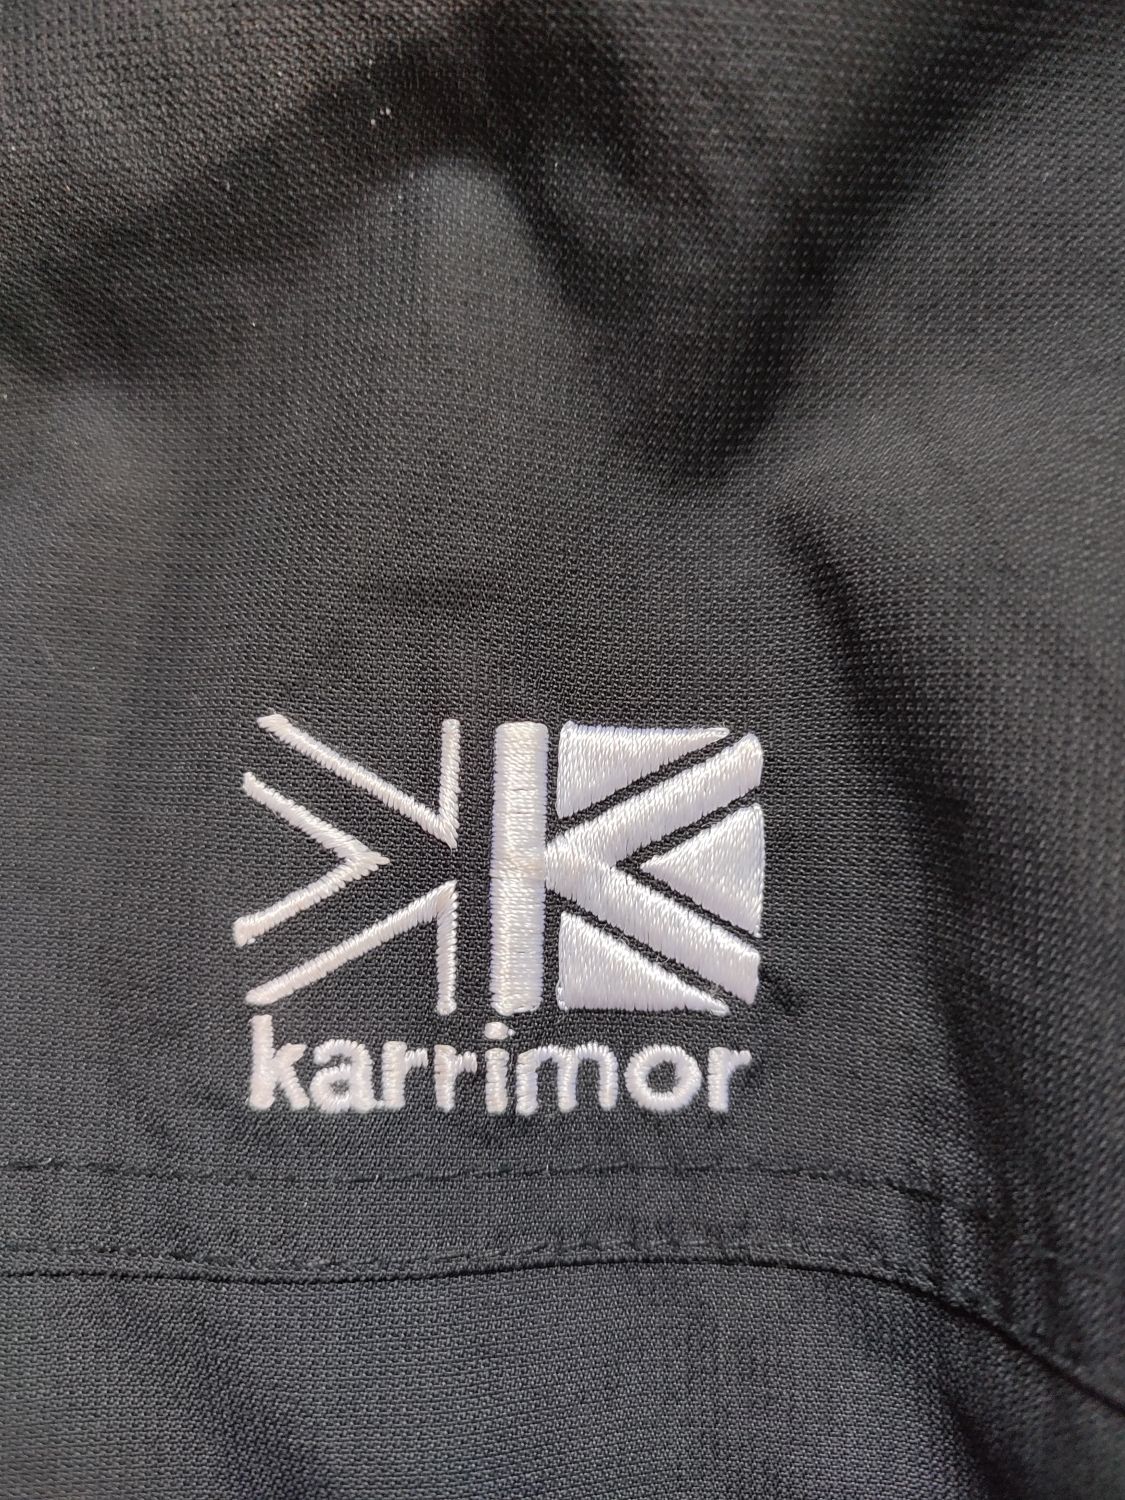 Ветровка karrimor goretex,с капюшоном,черного цвета,размер s,в идеальн